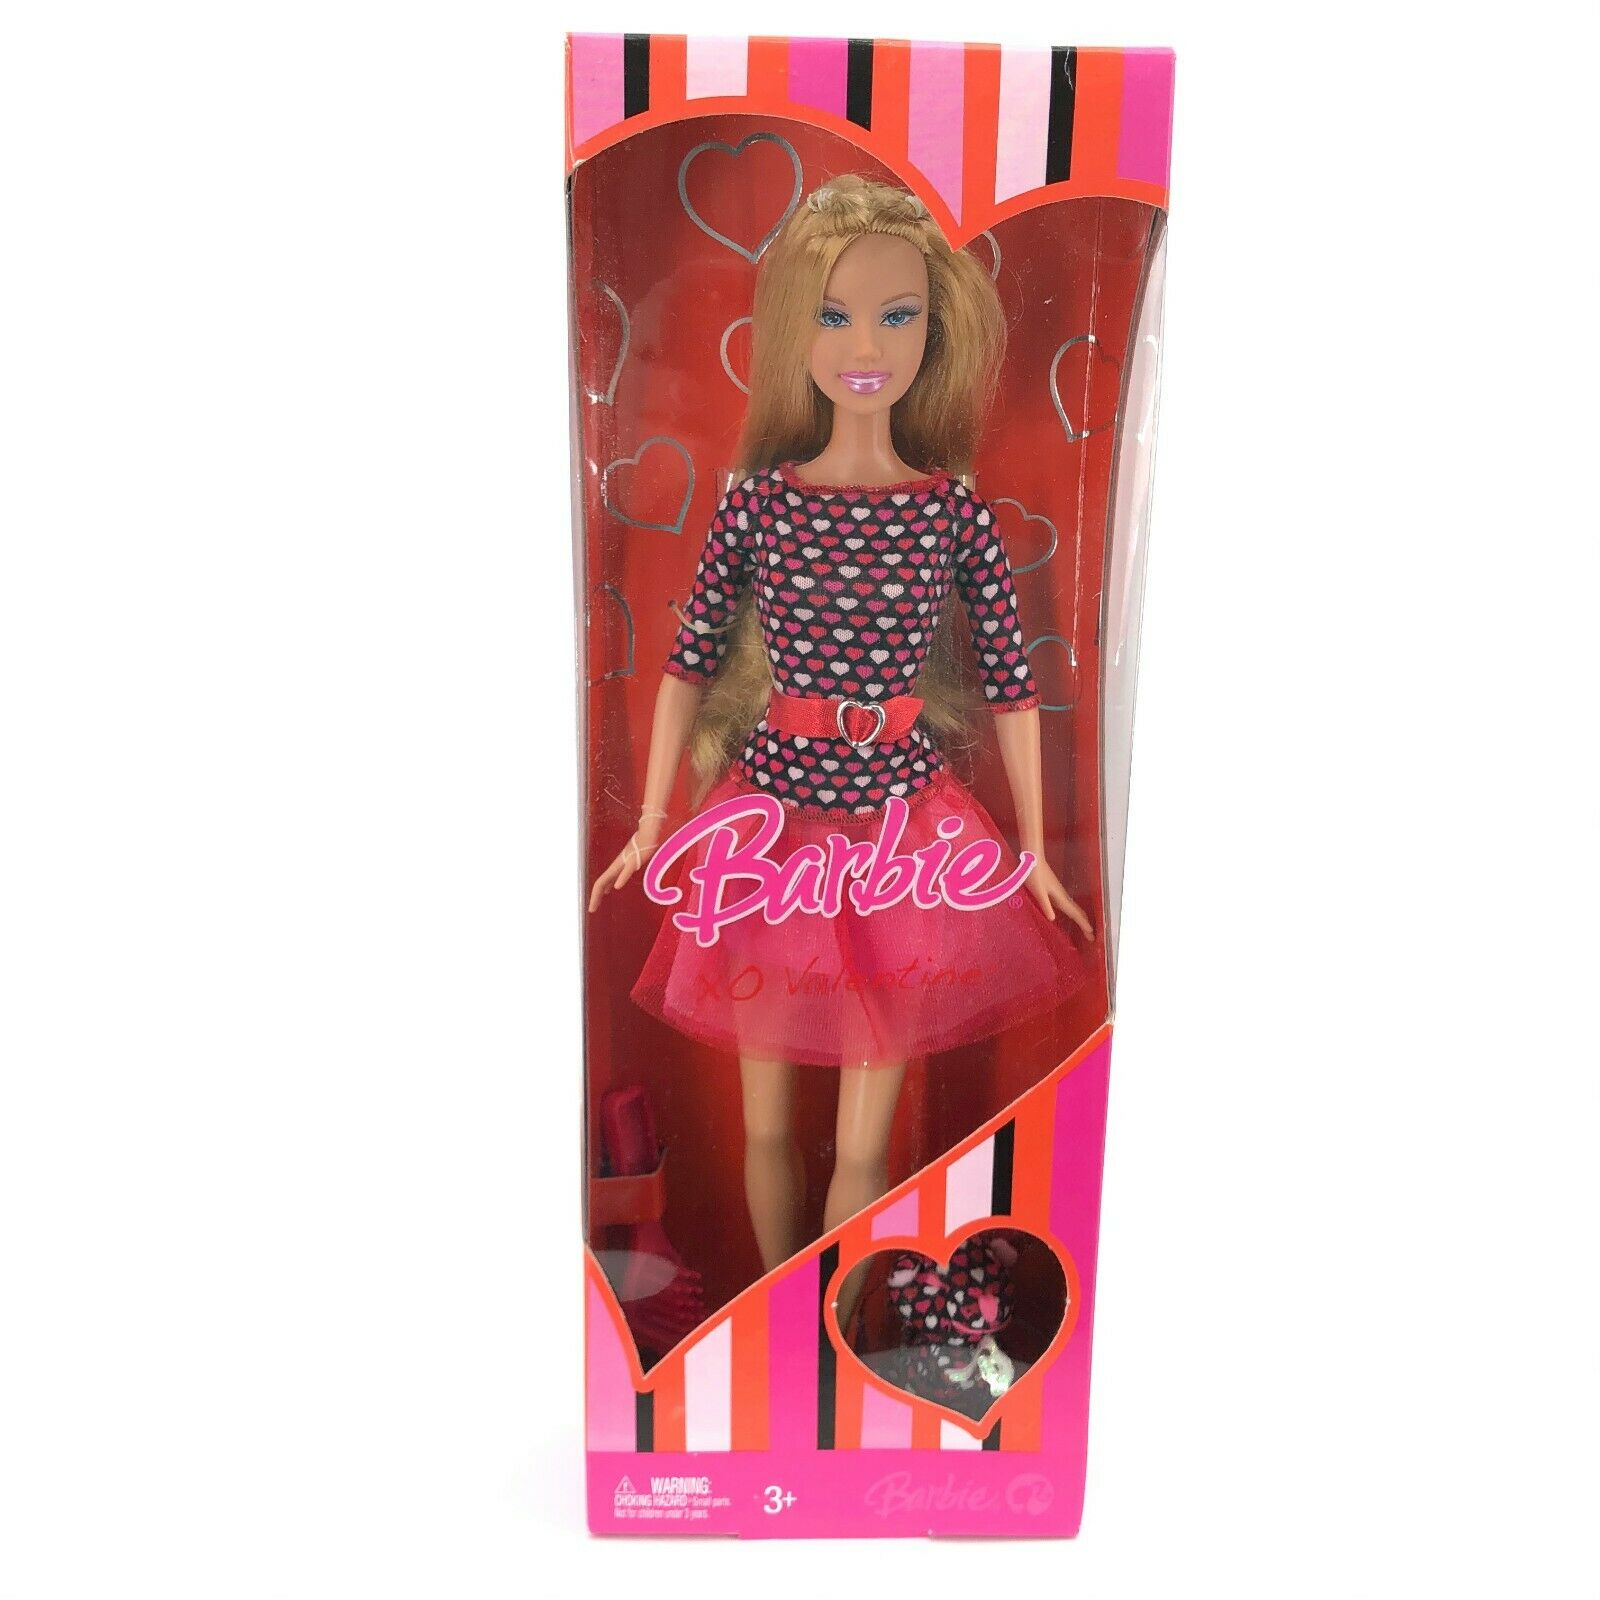 Barbie Doll Xo Valentine 2007